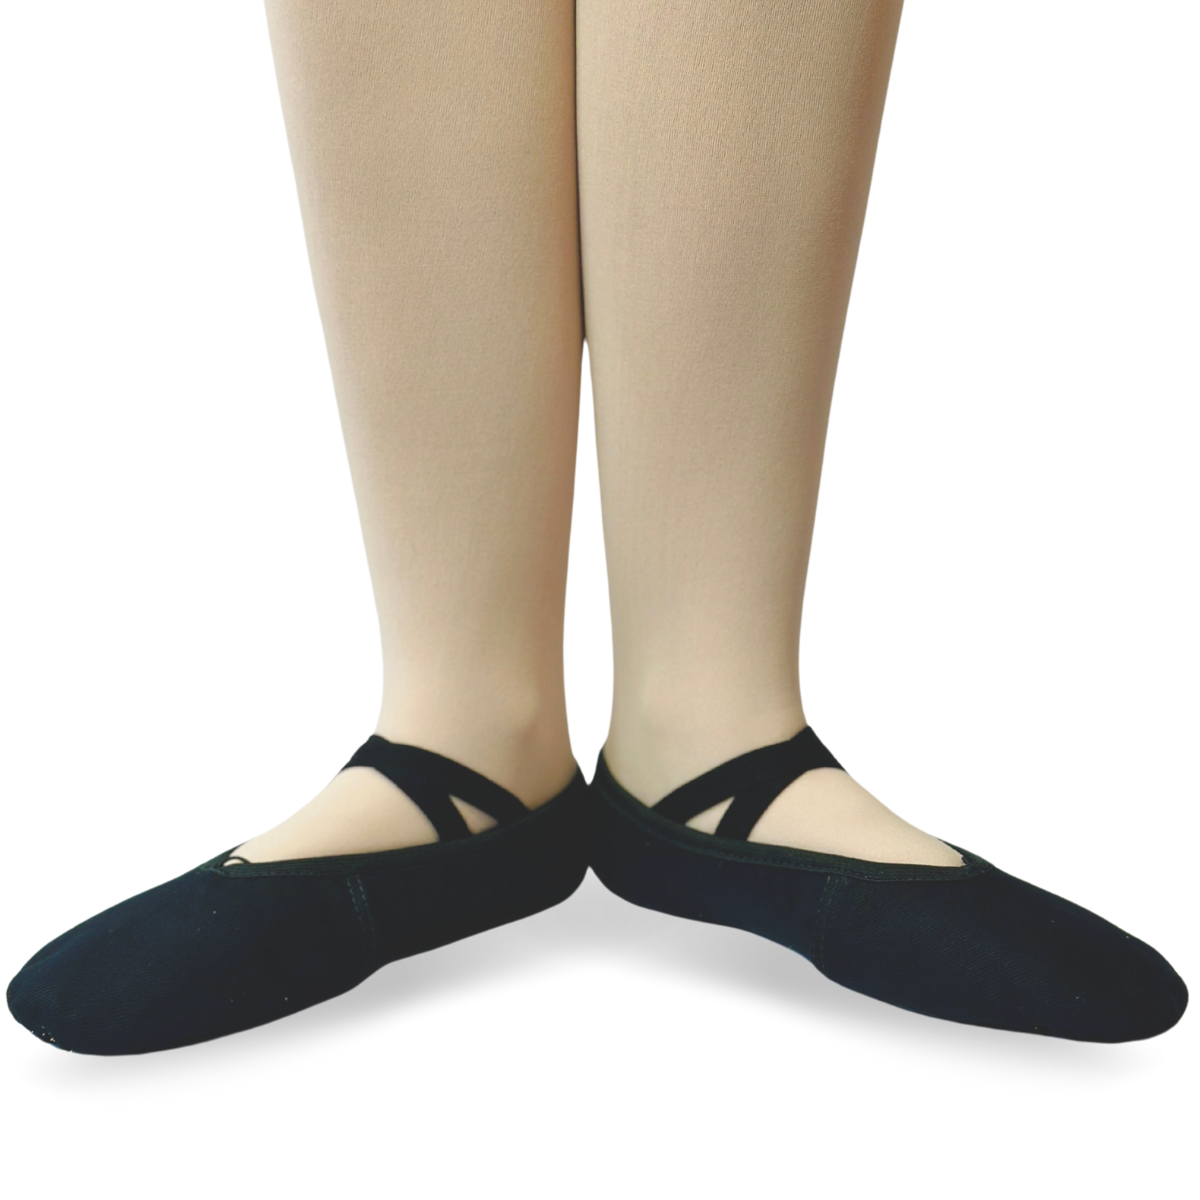 Como escolher sapatilhas de bailarina? - Evidence Ballet - Loja